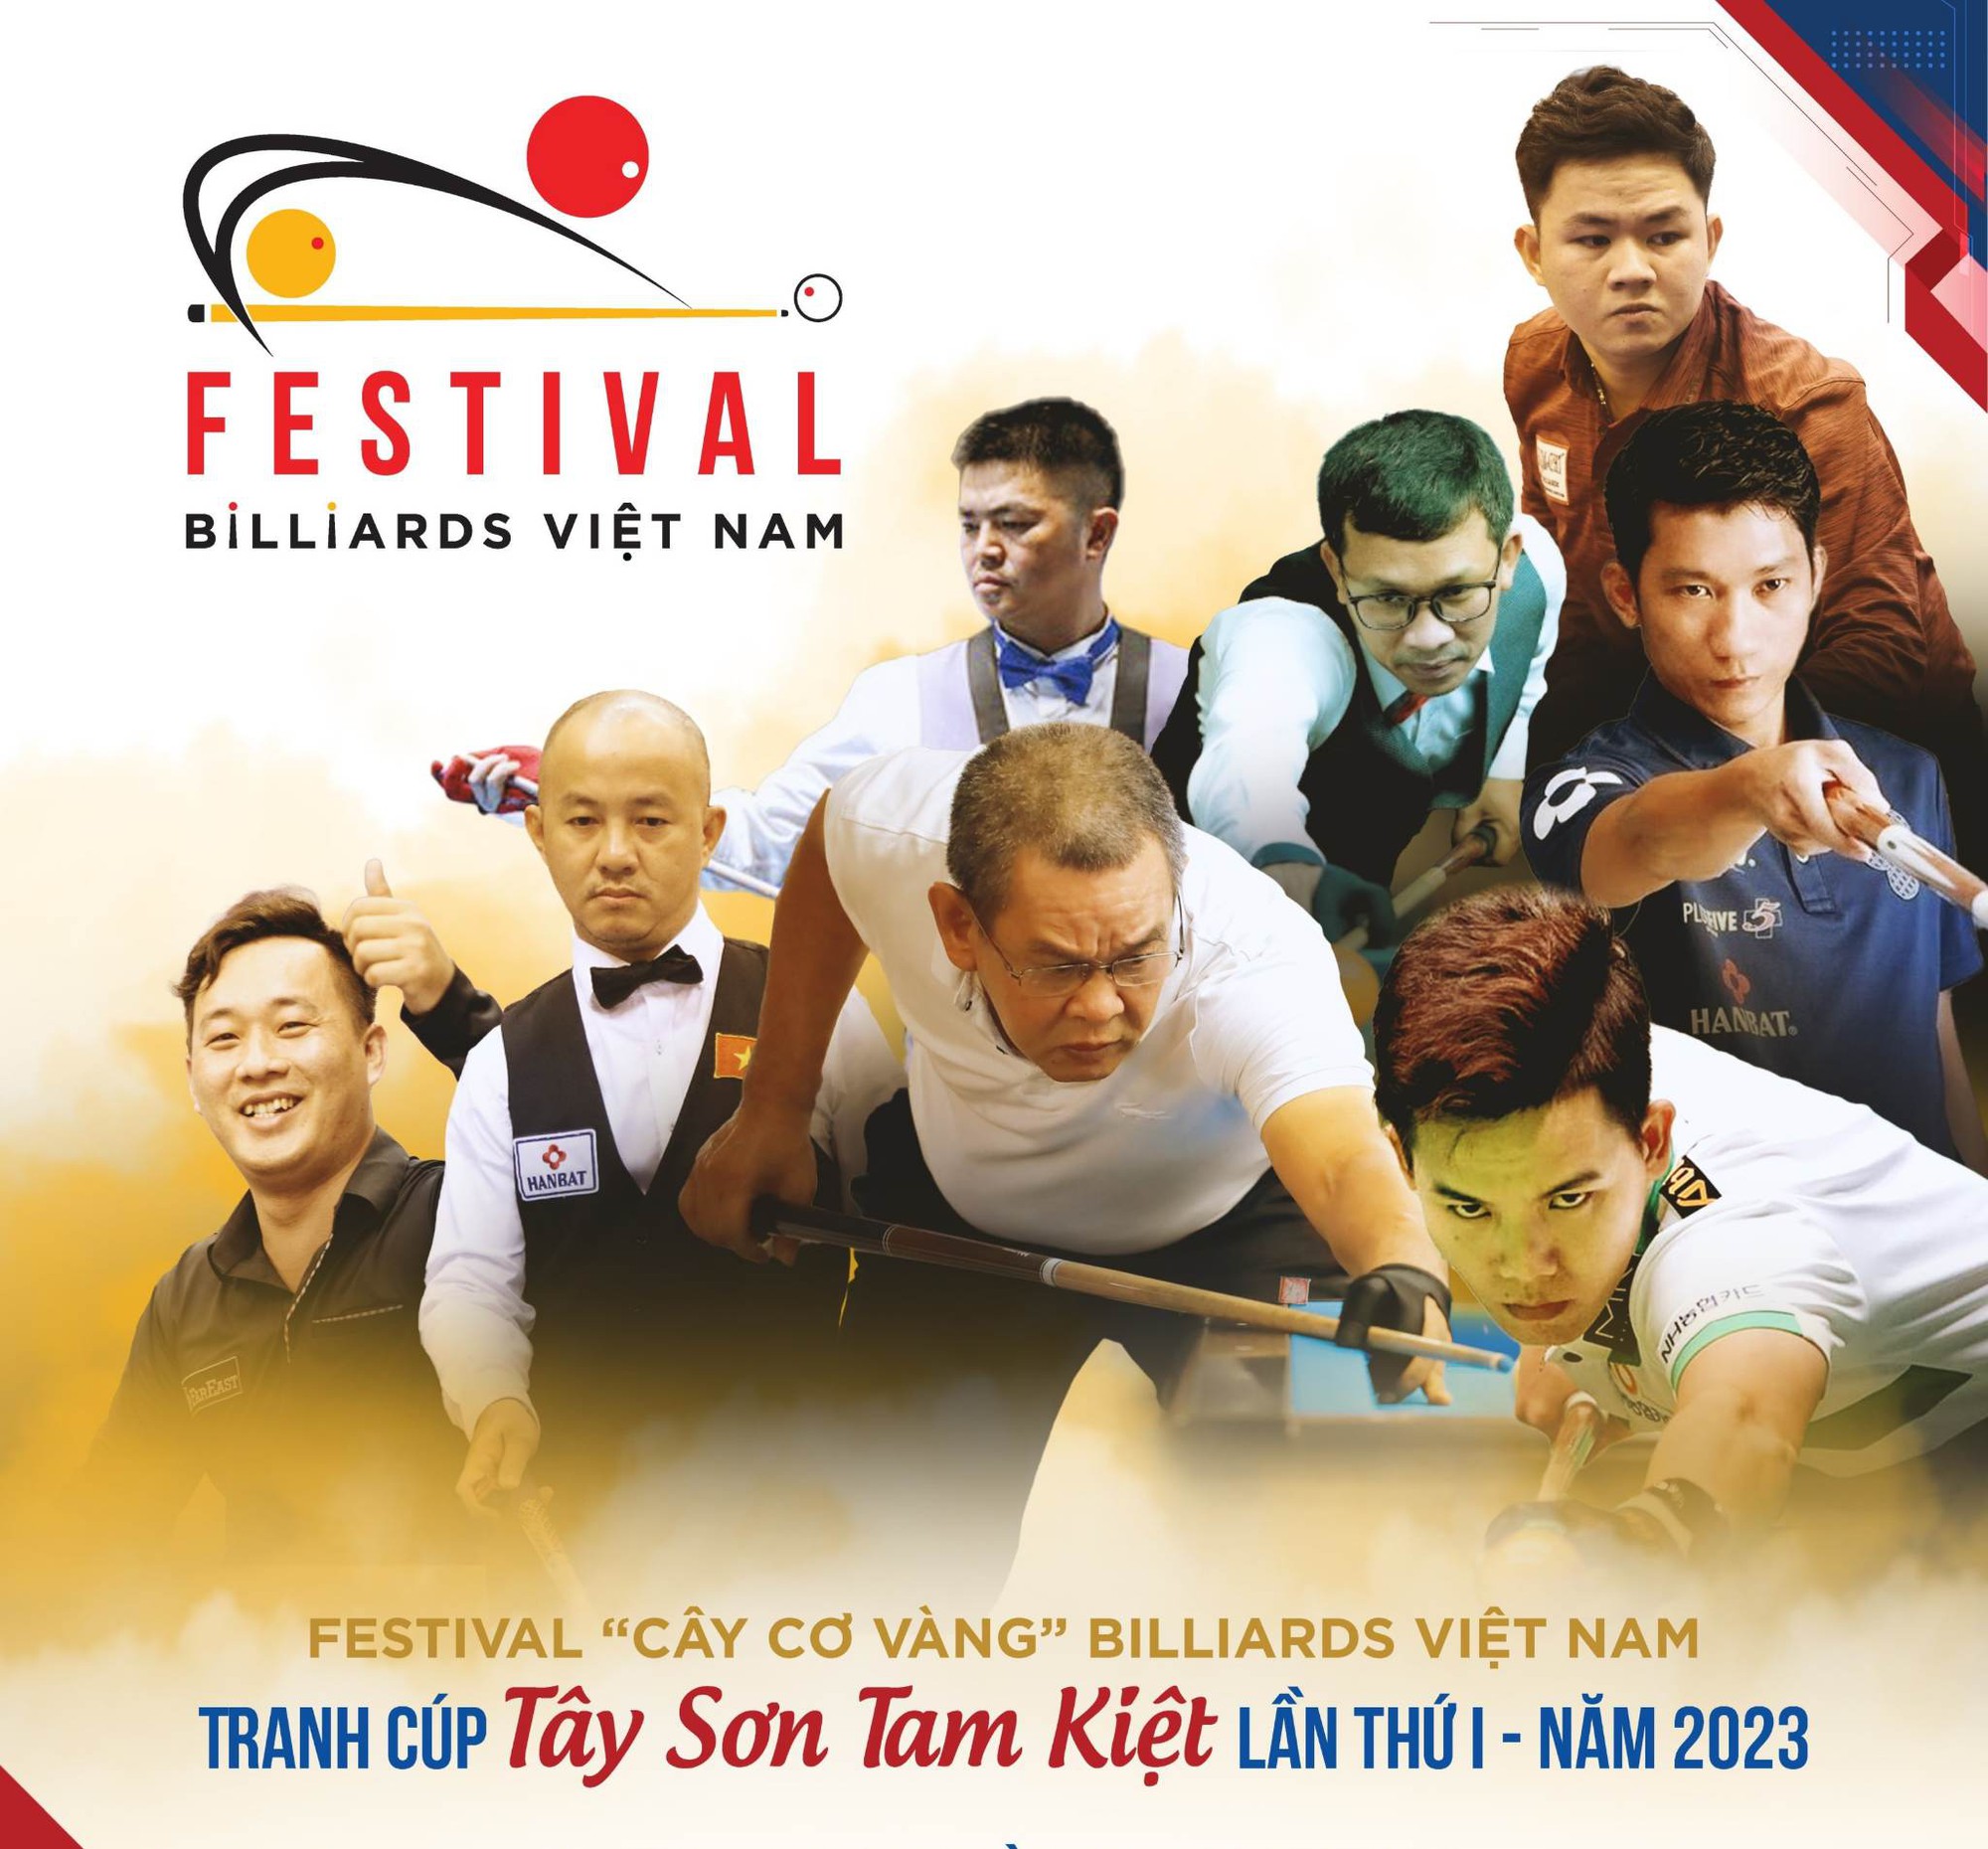 Nguyễn Huỳnh Phương Linh vô địch Festival billiards Cây cơ vàng 2023 - Ảnh 1.